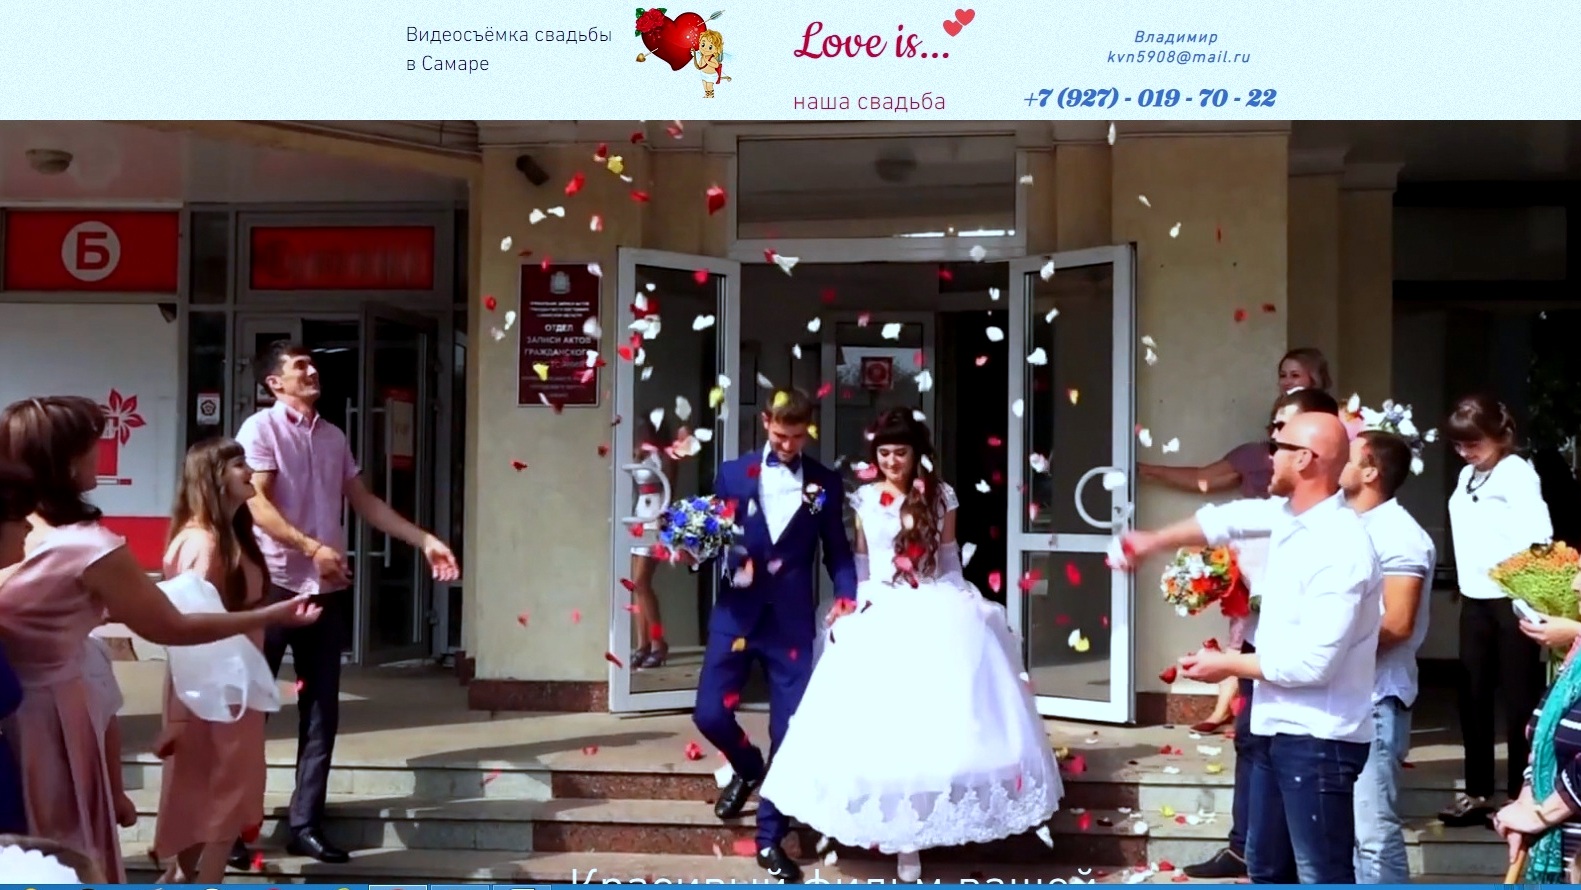 Видеосъемка свадебного торжества в городе Самара, фото 2, телефон продавца: +7 (927) 019-70-22